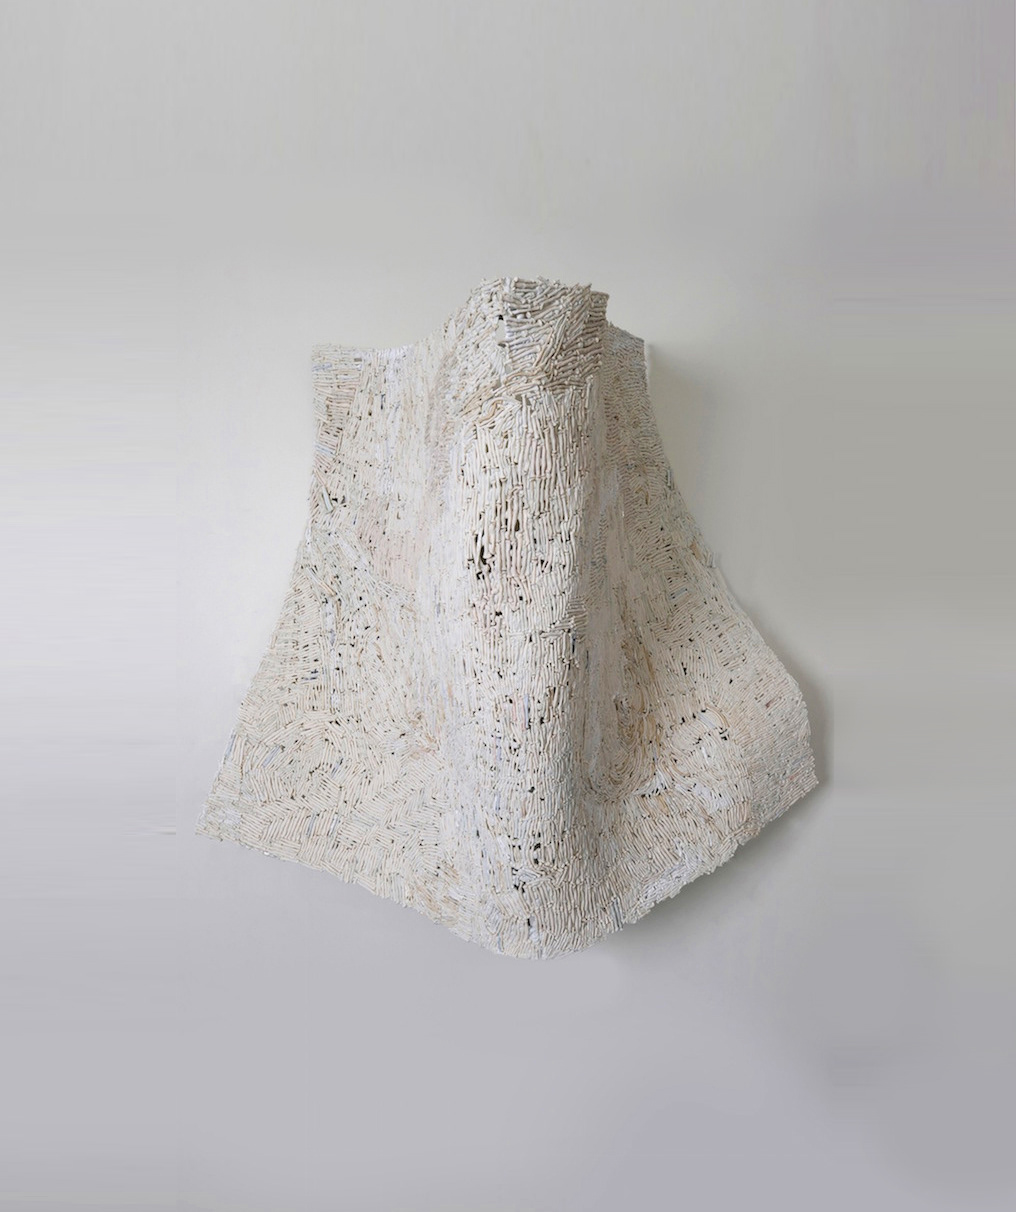 ceramic ceramics  sculpture contemporary art